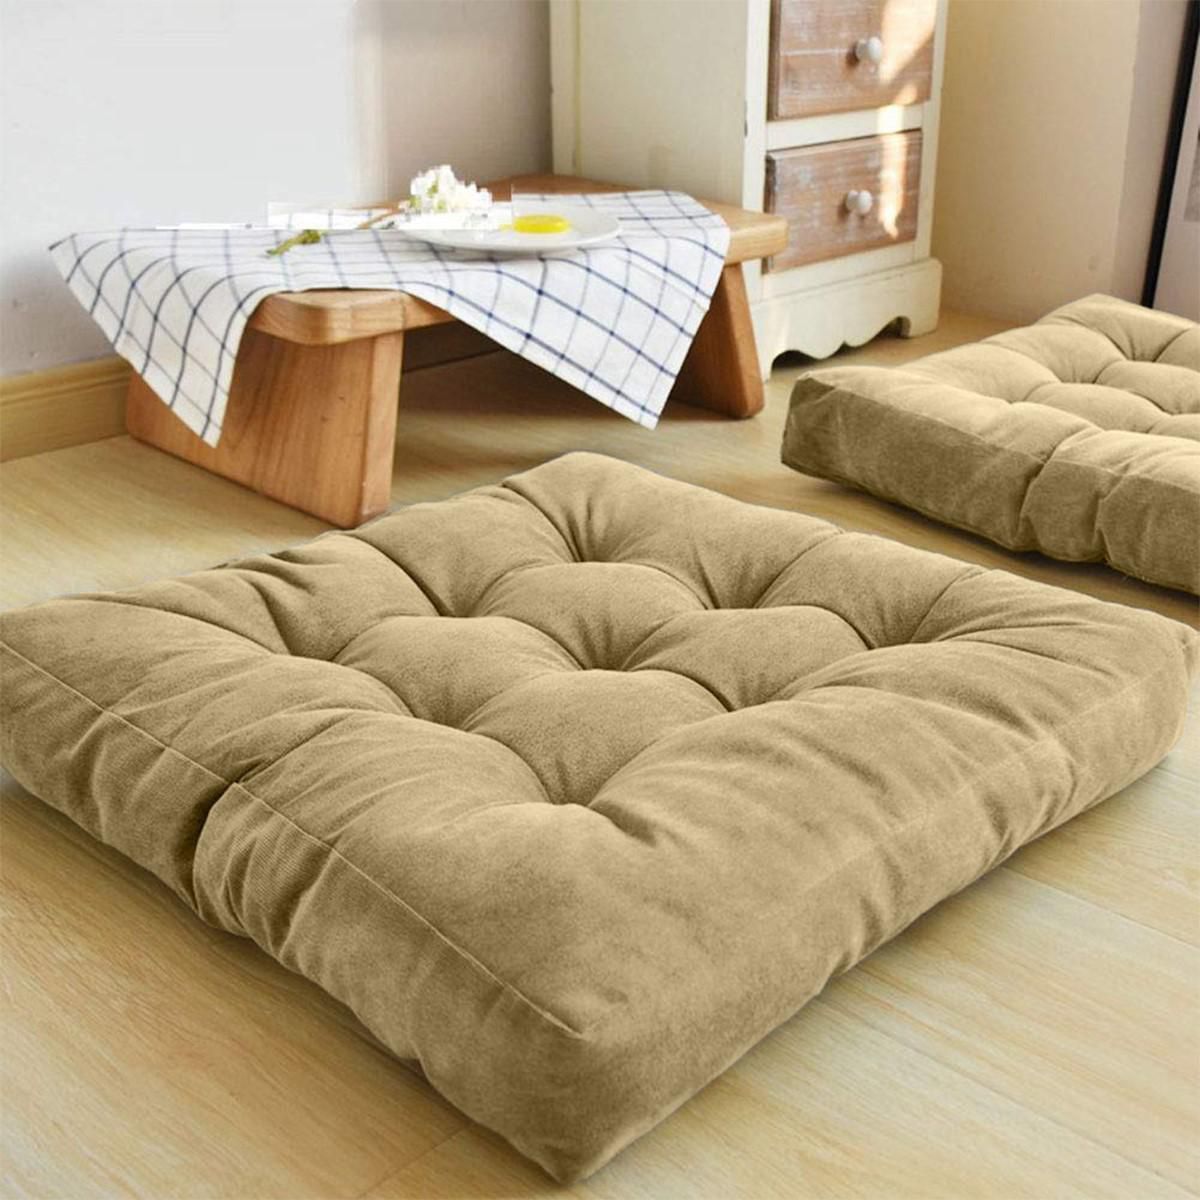 Simple and Comfortable Square Floor Velvet Tuffed Cushion (55cm x 55cm x 10cm)